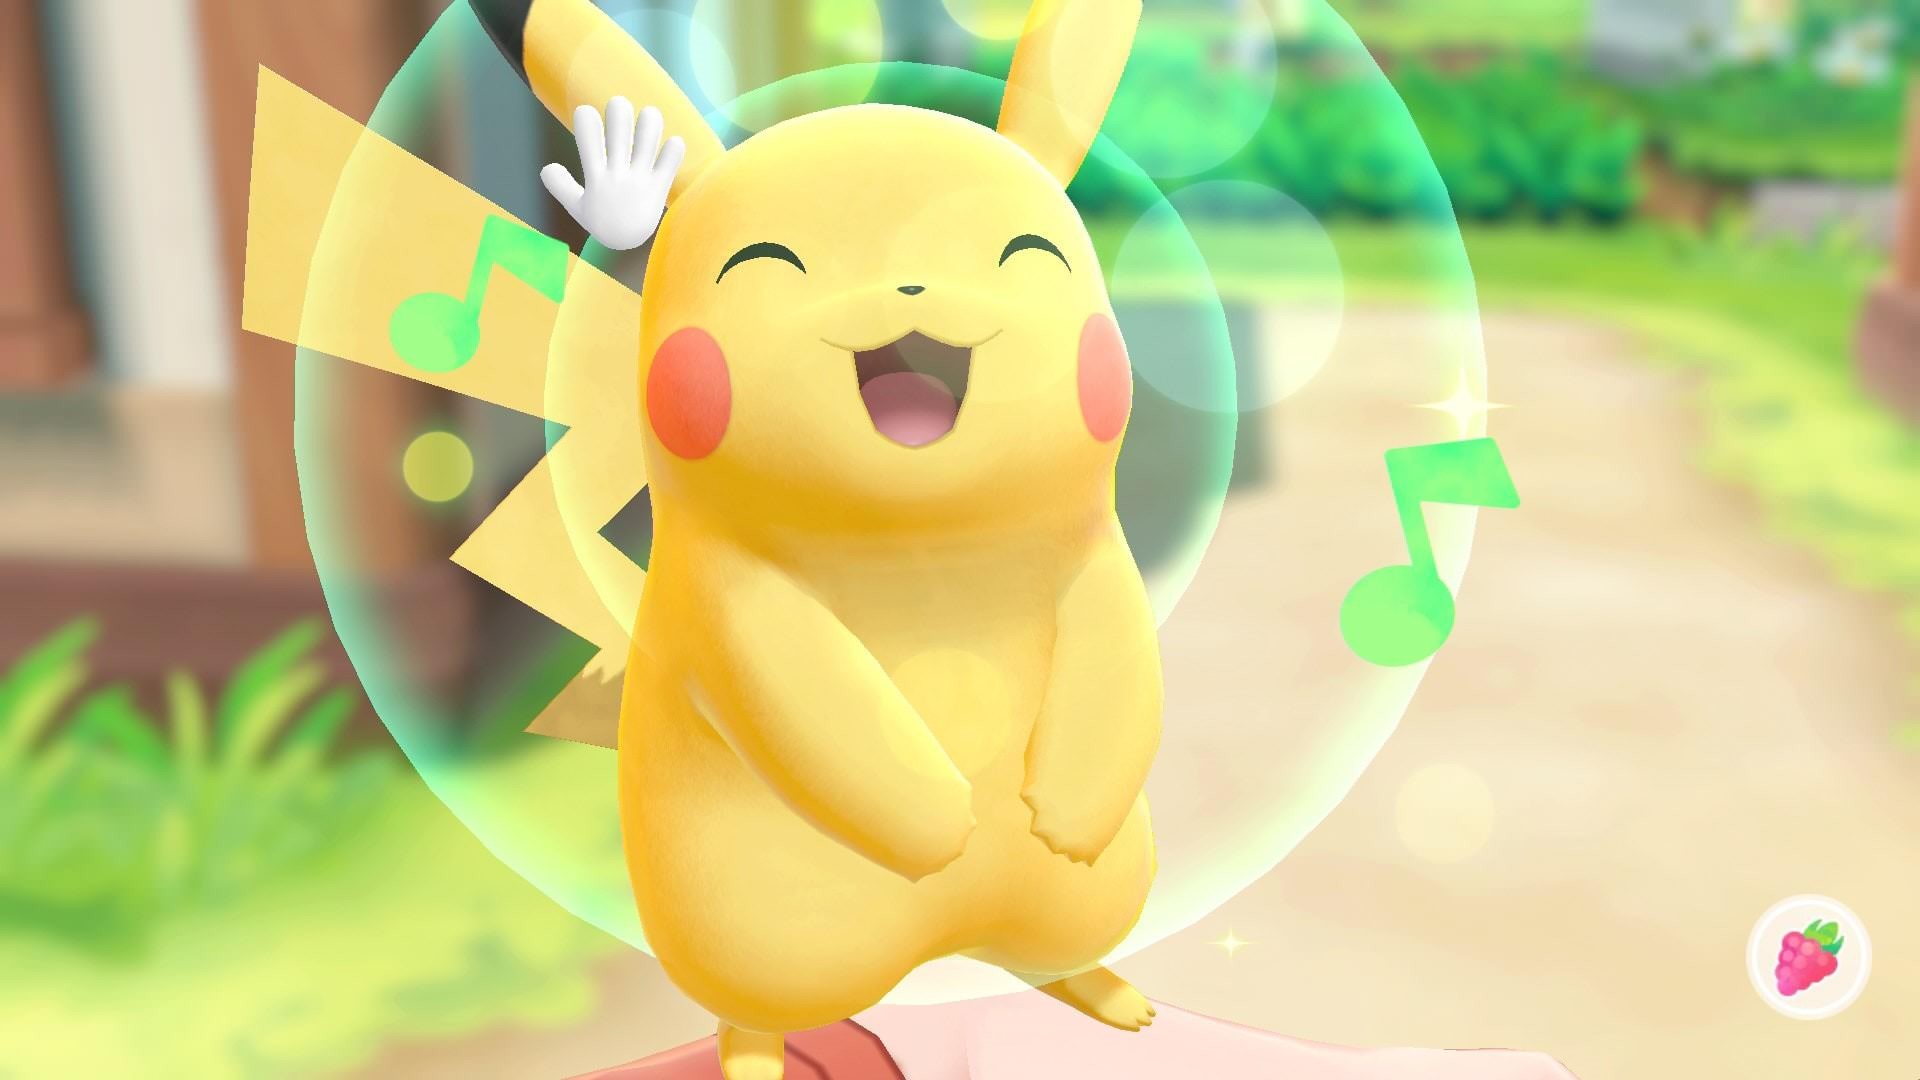 Pokémon Lets Go Pikachu Switch Europe